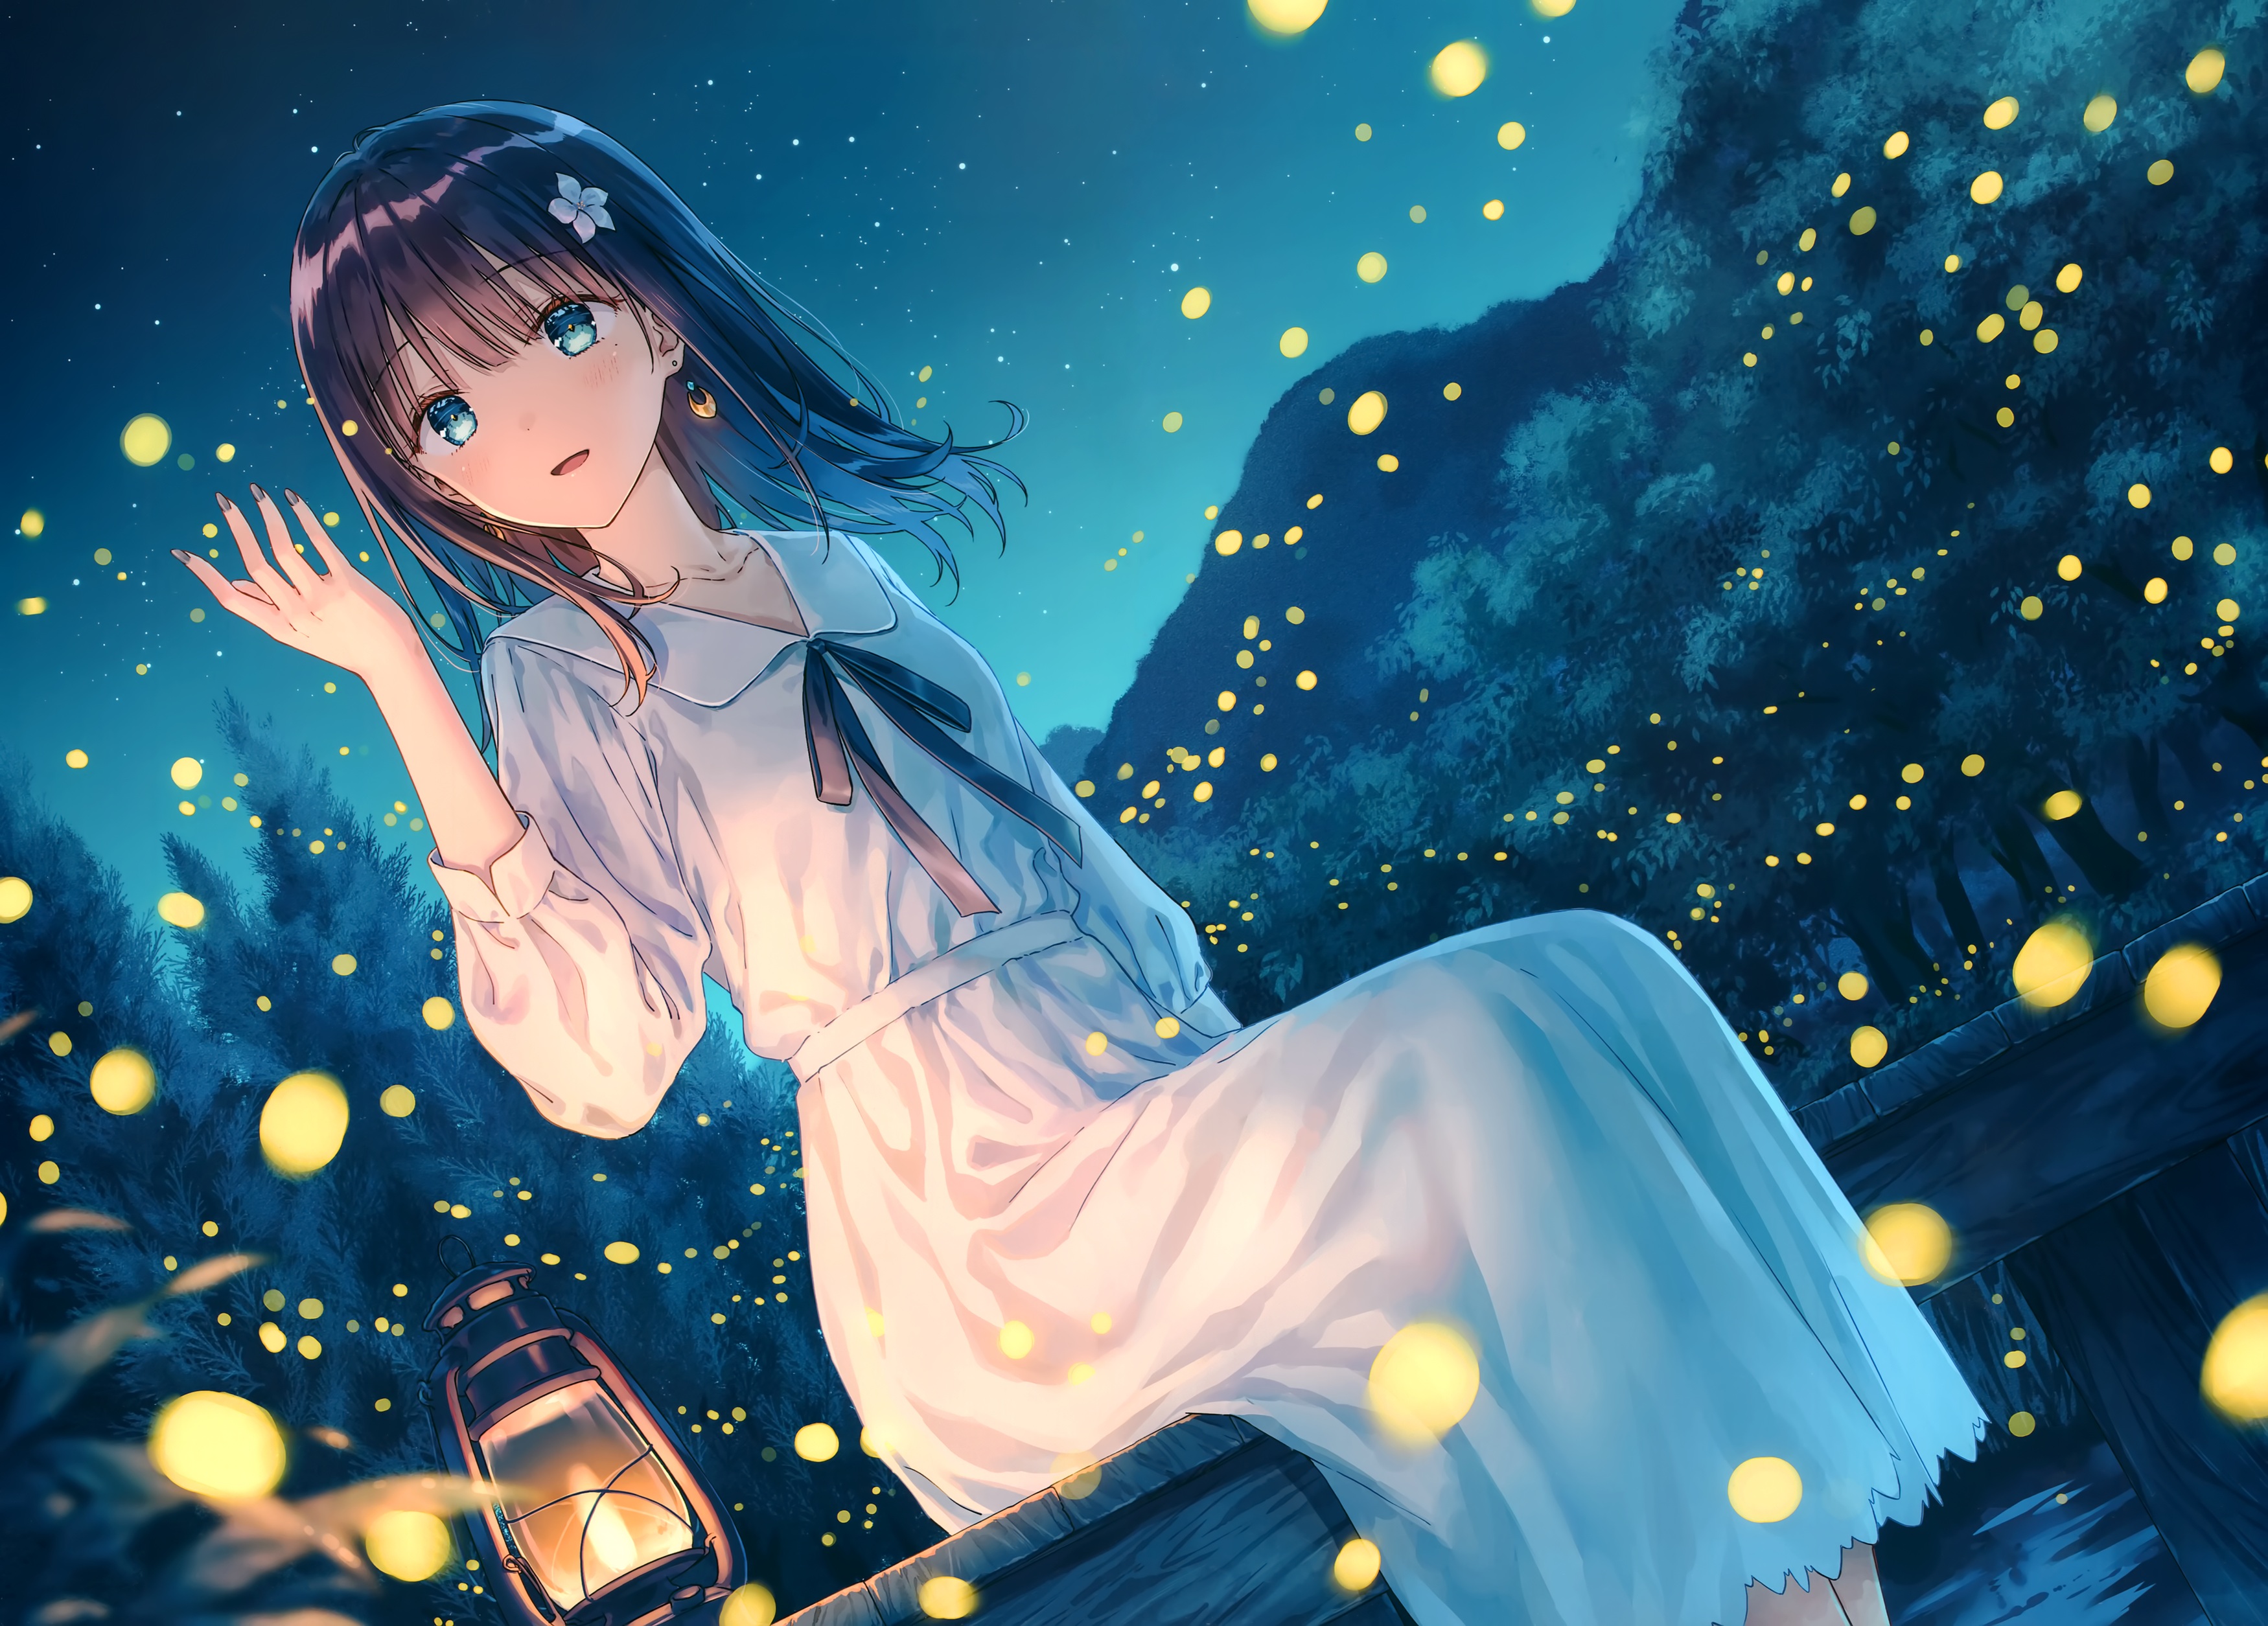 Hiten Anime Girls Dress White Dress Shoulder Length Hair Sky Dark Hair Blue Eyes Night Fireflies Sta 3500x2510